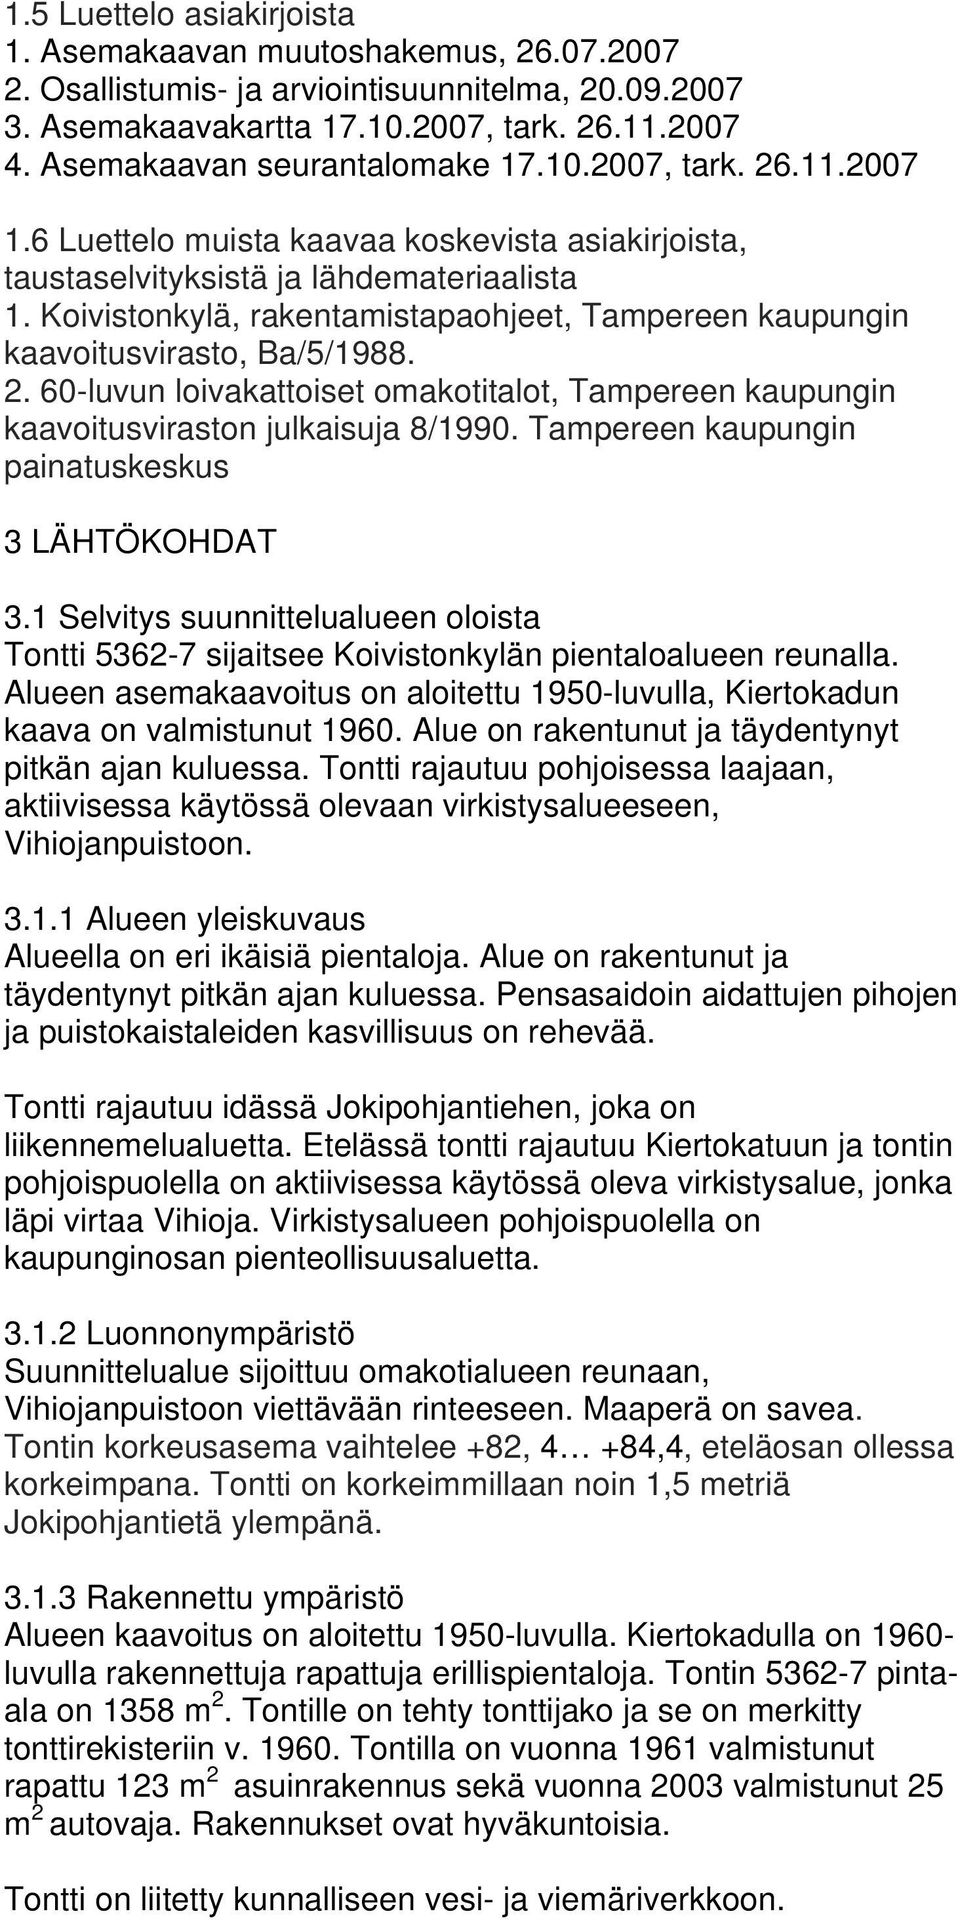 Koivistonkylä, rakentamistapaohjeet, Tampereen kaupungin kaavoitusvirasto, Ba/5/1988. 2. 60-luvun loivakattoiset omakotitalot, Tampereen kaupungin kaavoitusviraston julkaisuja 8/1990.